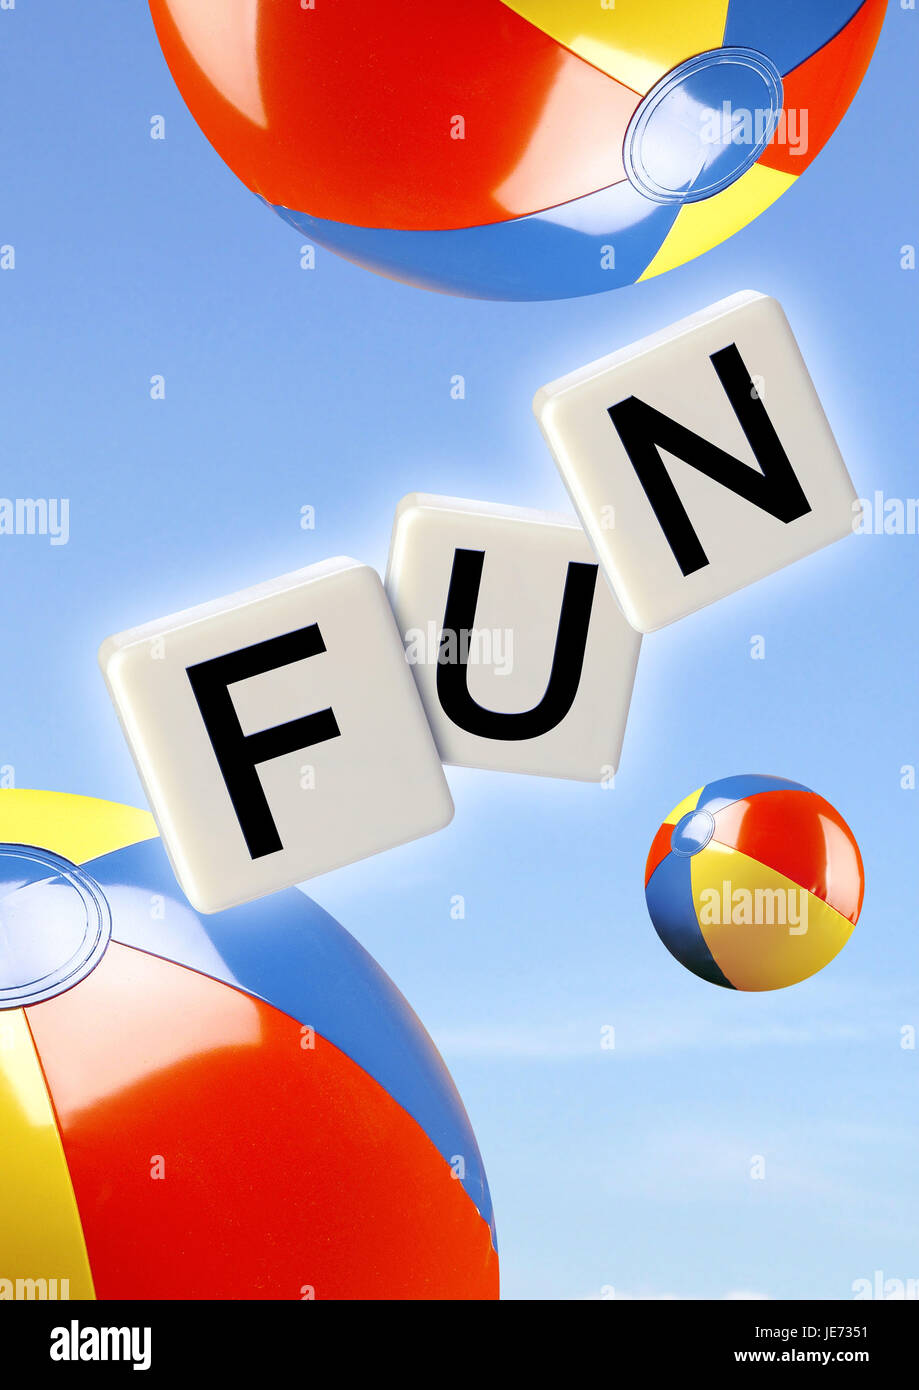 Beach-balls, gaming pieces, stroke 'fun', Stock Photo